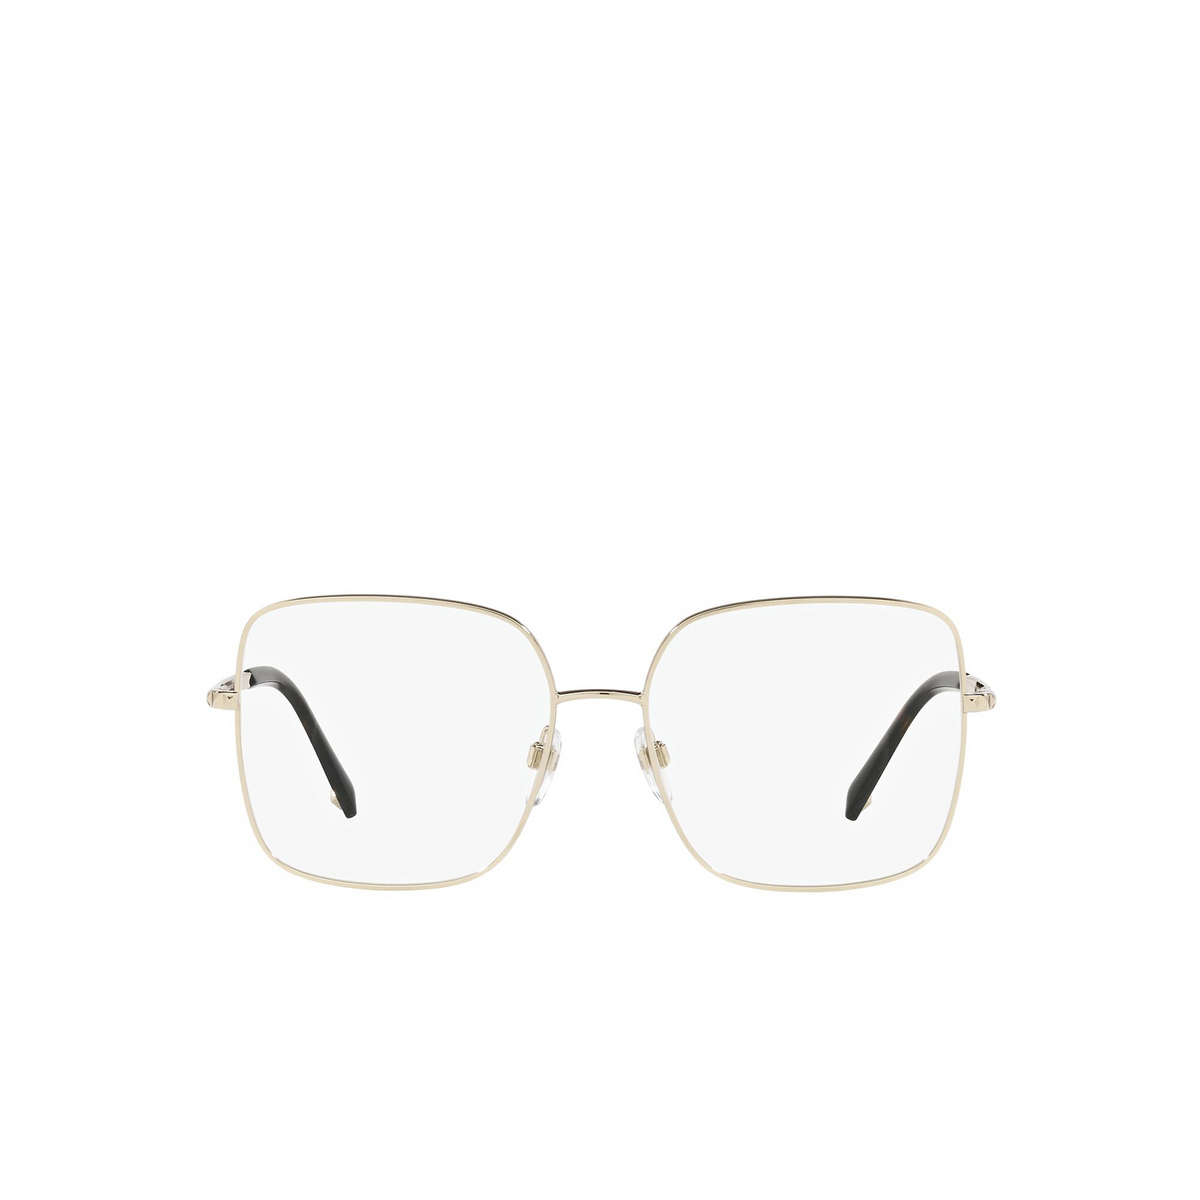 Valentino® Square Sunglasses: VA1024 color Light Gold 3003 - front view.